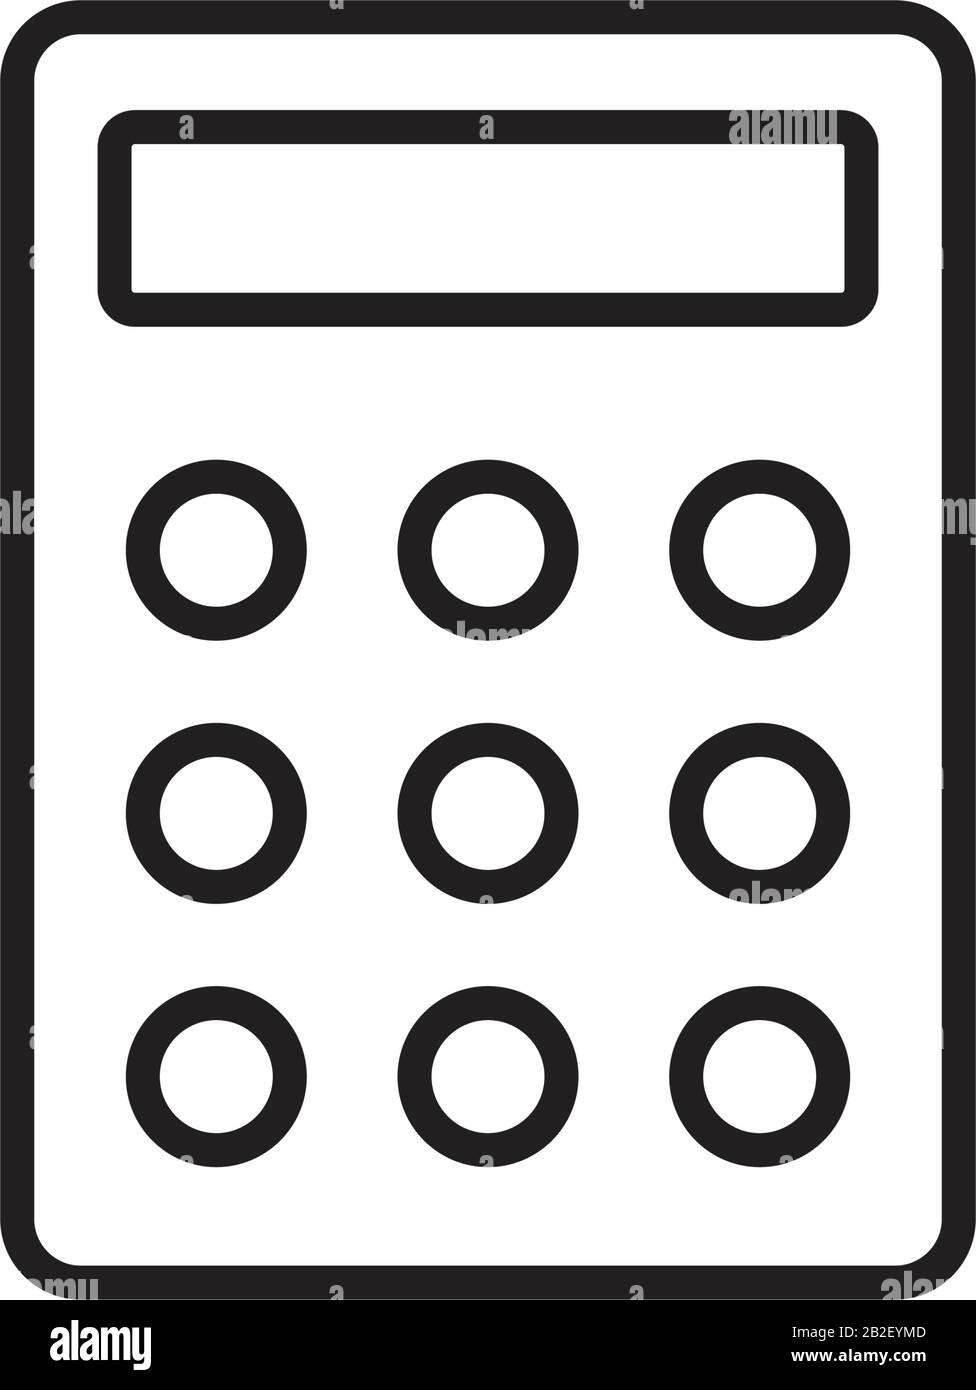 Icona calcolatrice colore nero modificabile. Icona calcolatrice immagine vettoriale piatta per la progettazione grafica e web. Illustrazione Vettoriale